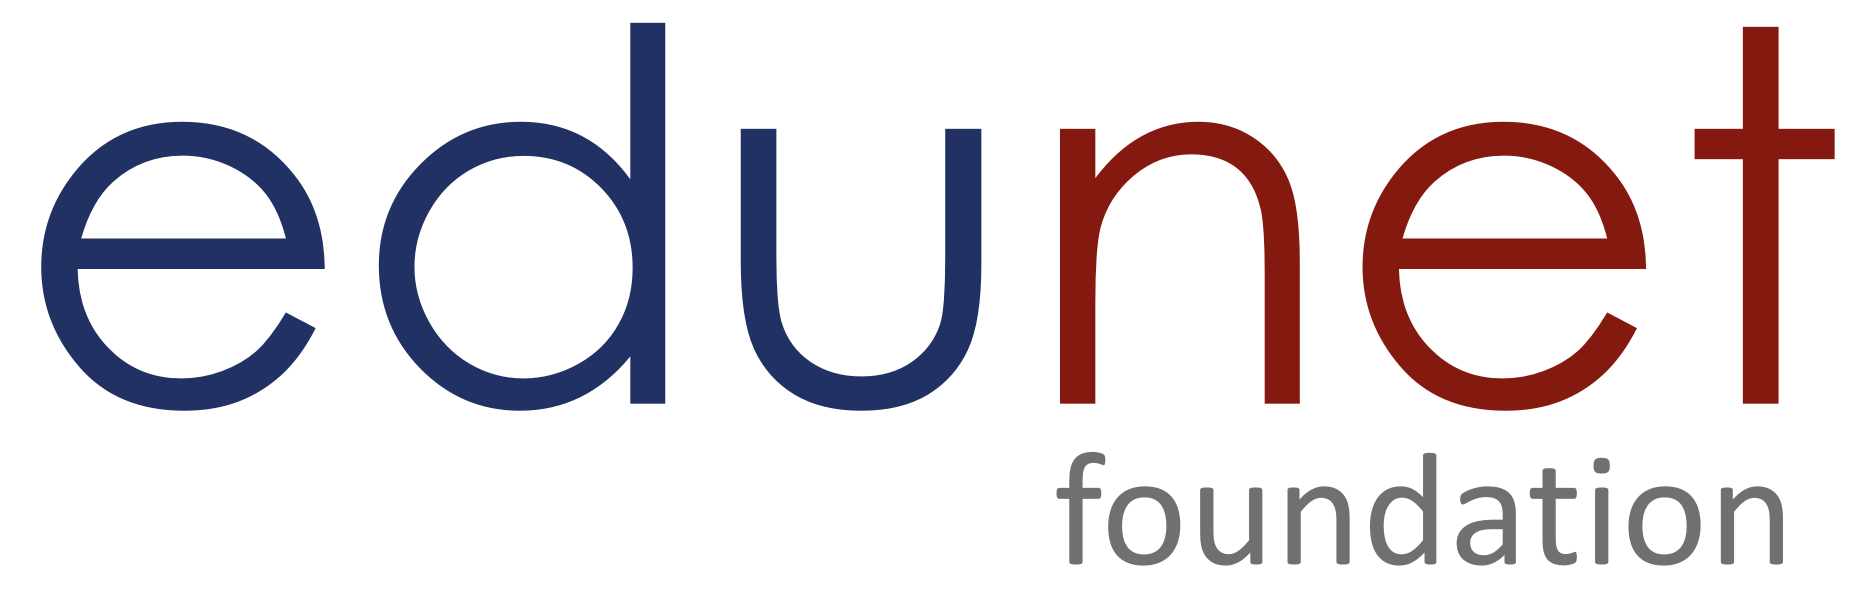 Edunet Foundation logo